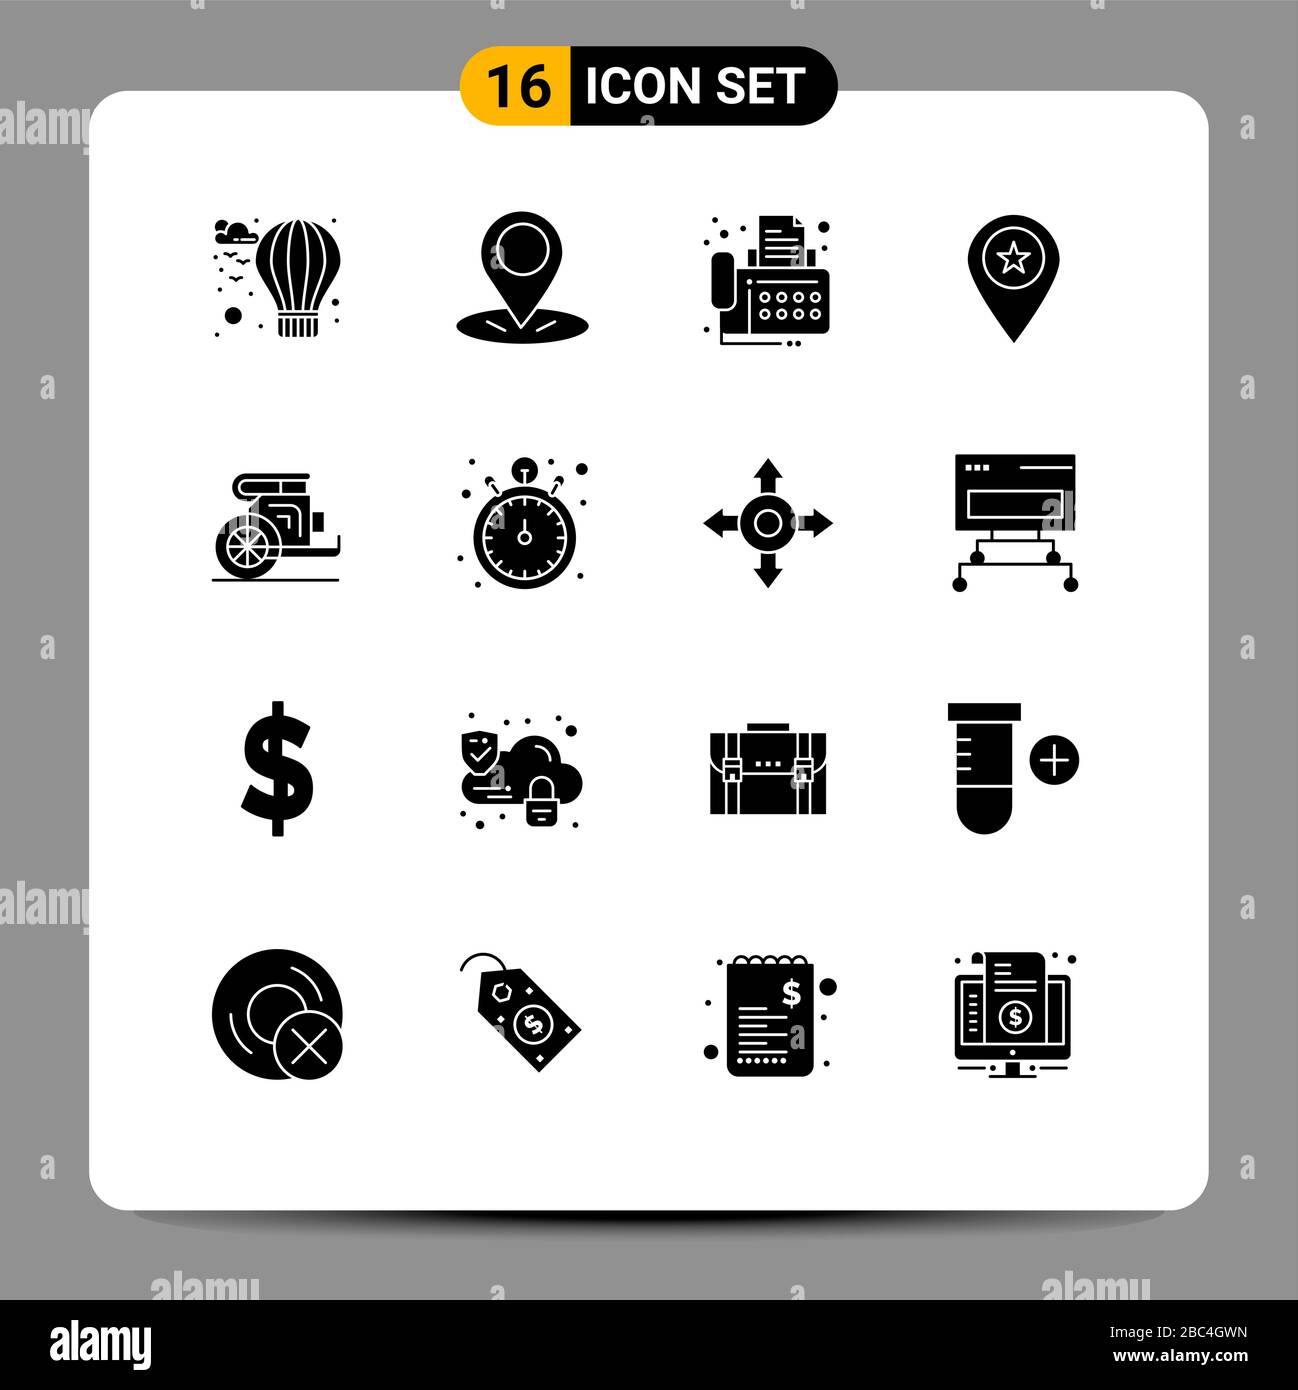 Símbolos de iconos universales Grupo de 16 Glyphs sólidos modernos de elementos antiguos, carruajes, fax, alfiler, mapa de diseño vectorial editable Ilustración del Vector